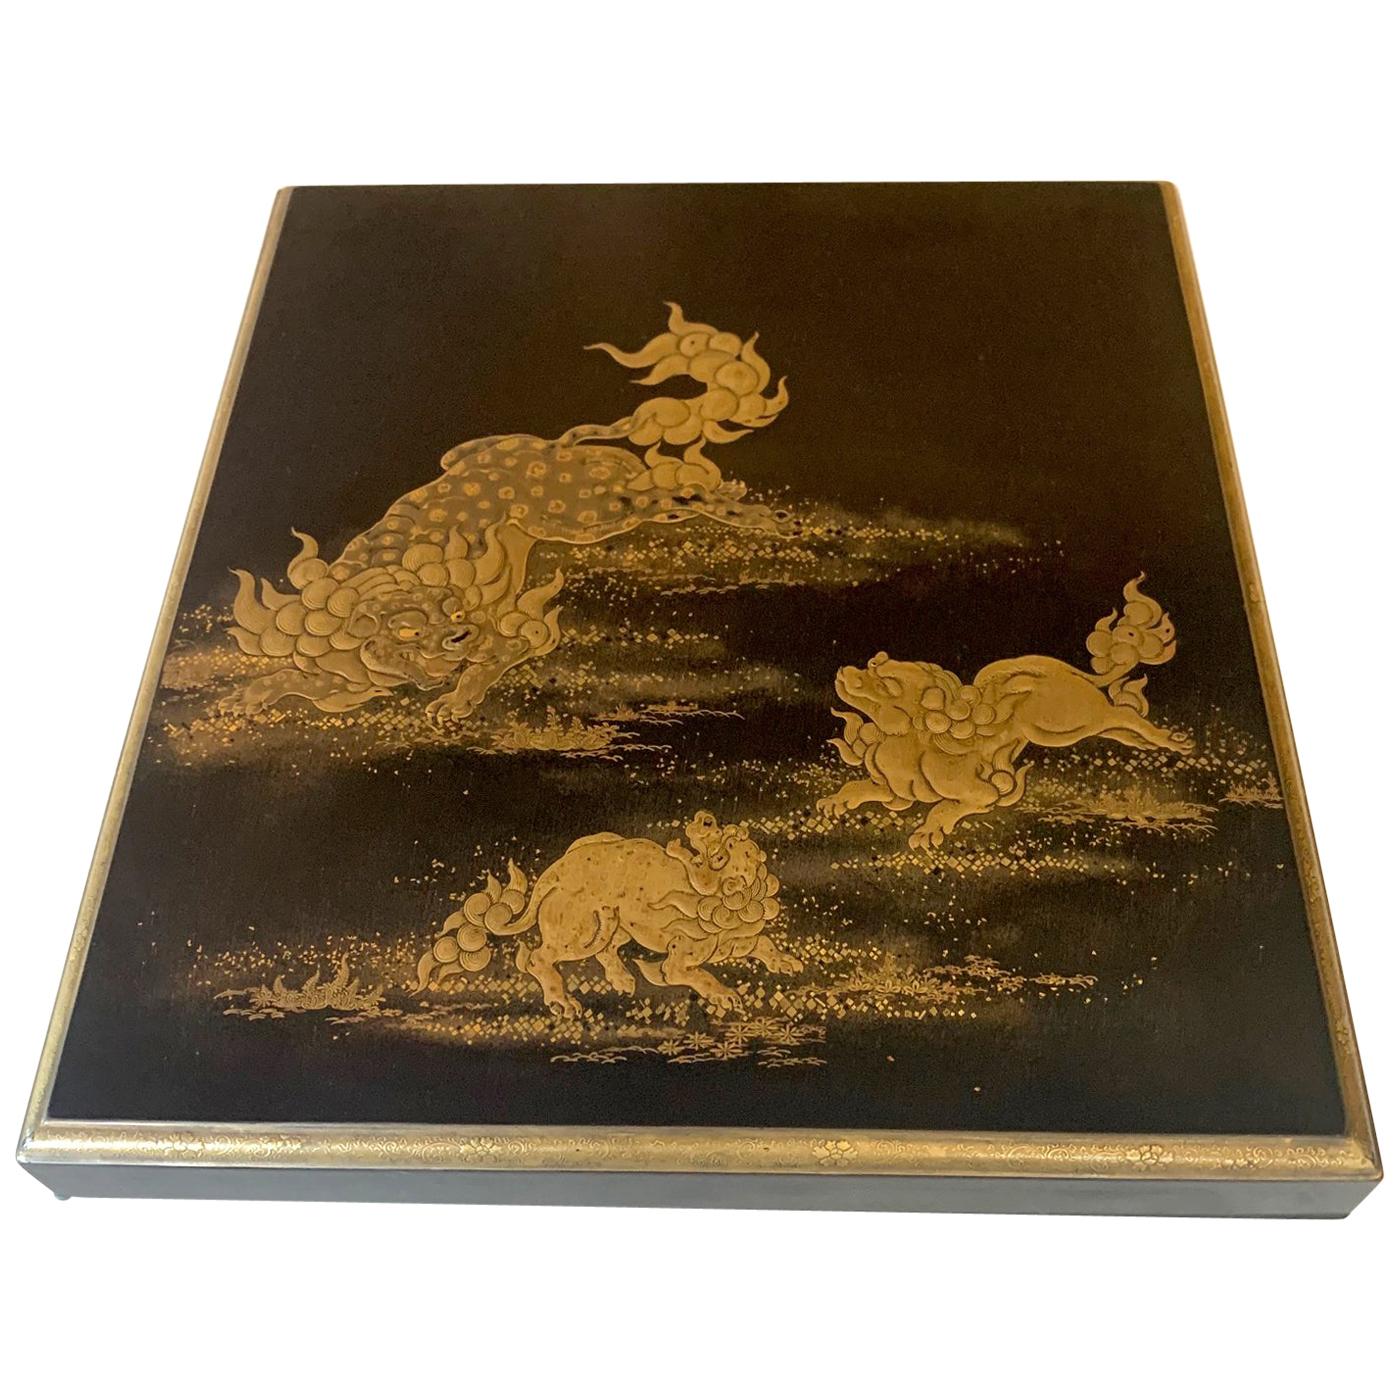 Japanese Lacquer Box with Fine Maki-e Decoration Meiji Period